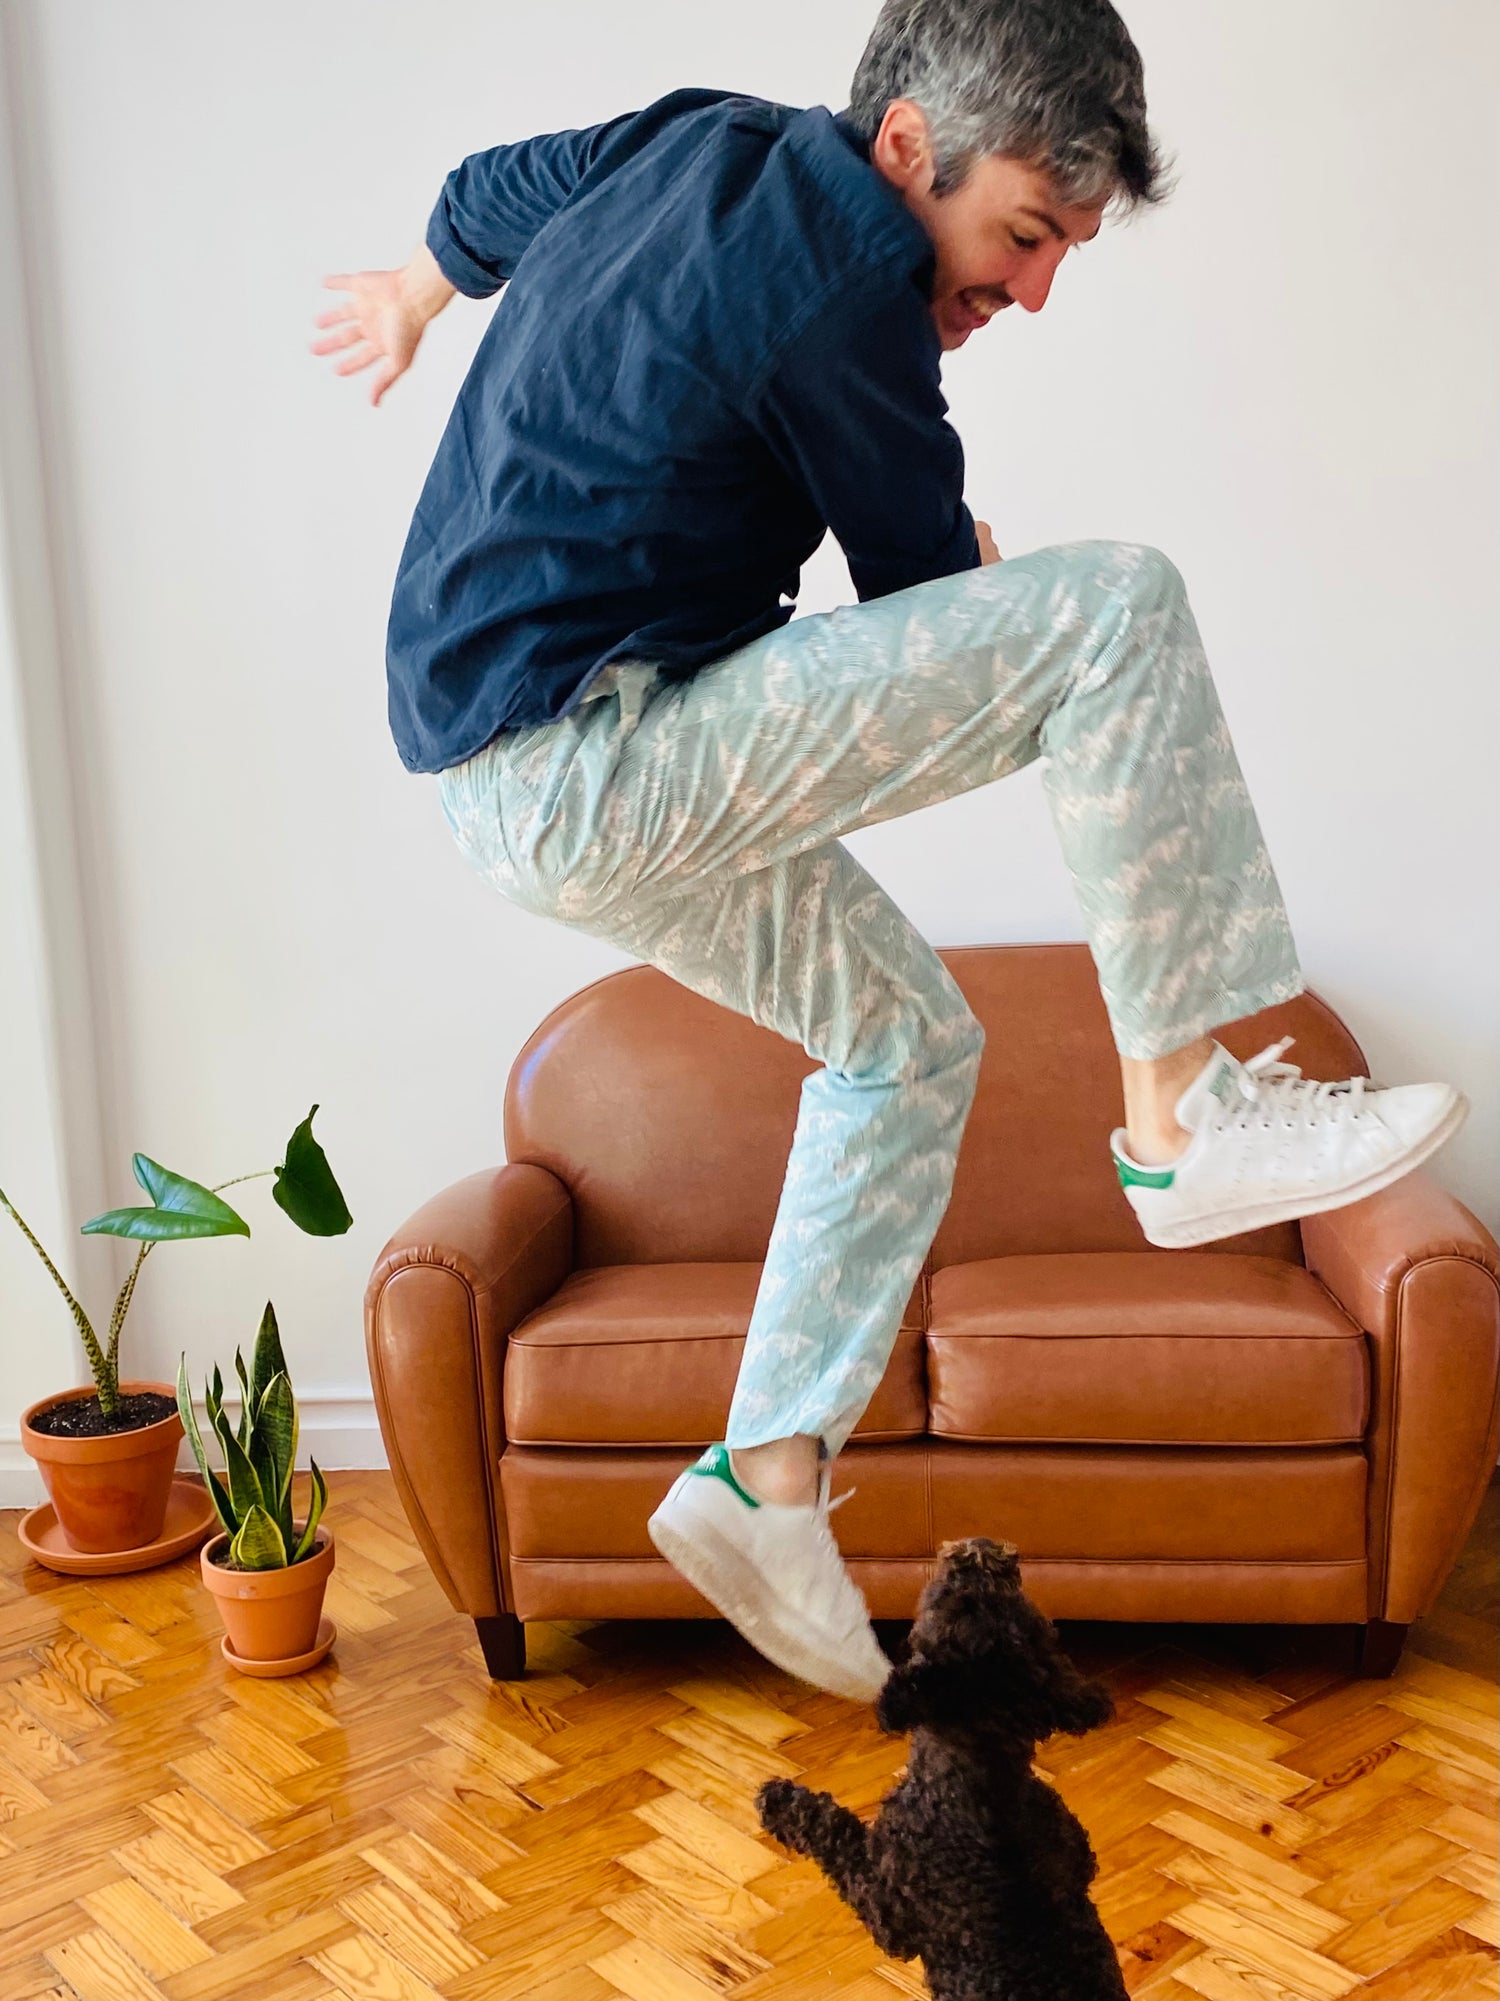 Man jumping at home in pyjamas